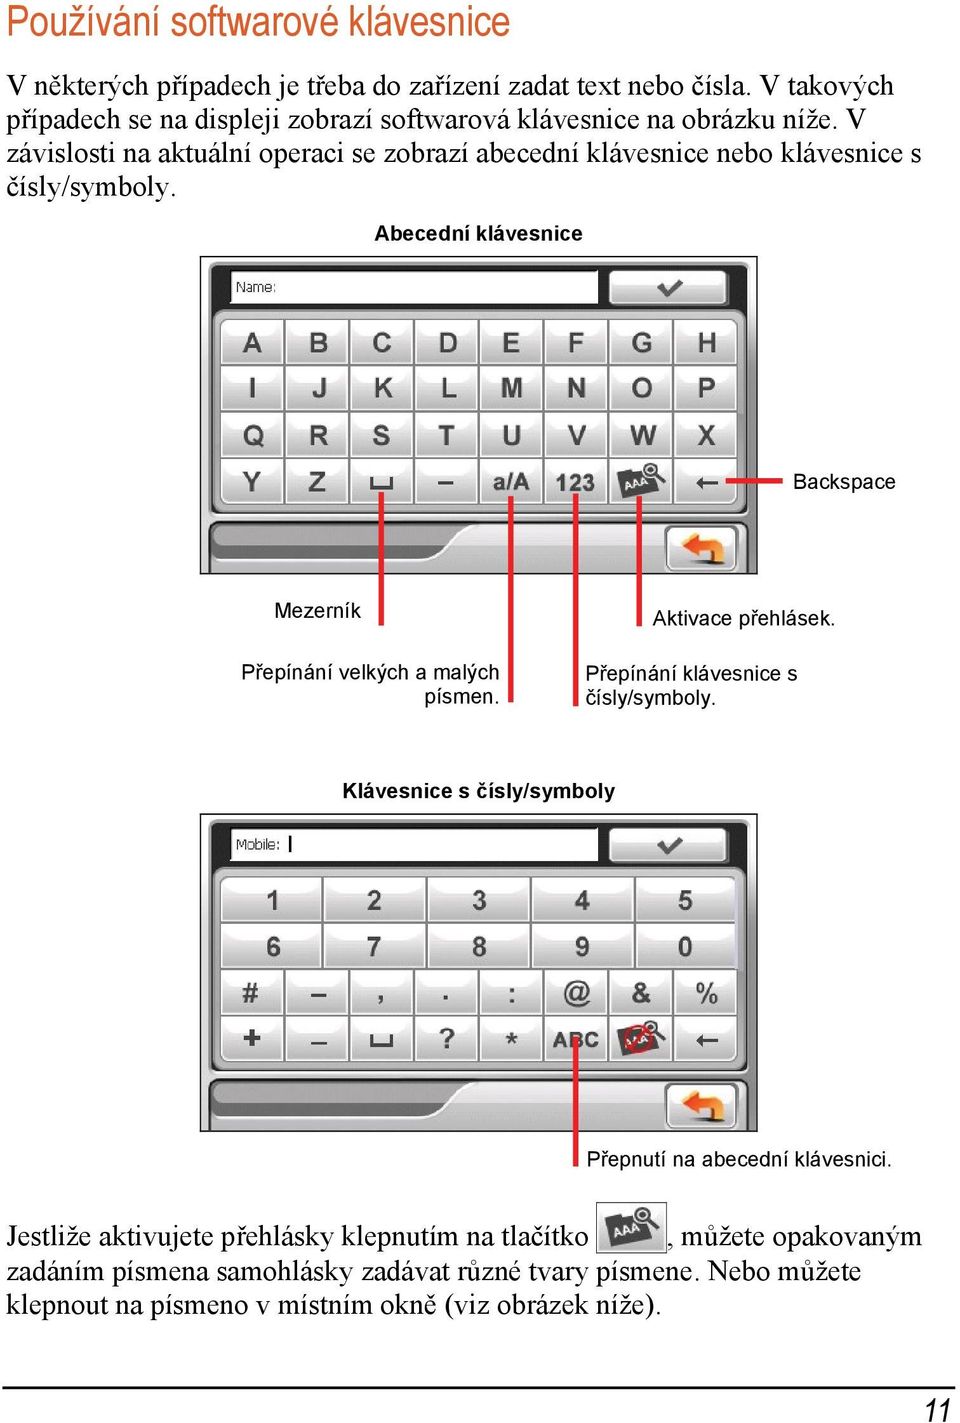 V závislosti na aktuální operaci se zobrazí abecední klávesnice nebo klávesnice s čísly/symboly.